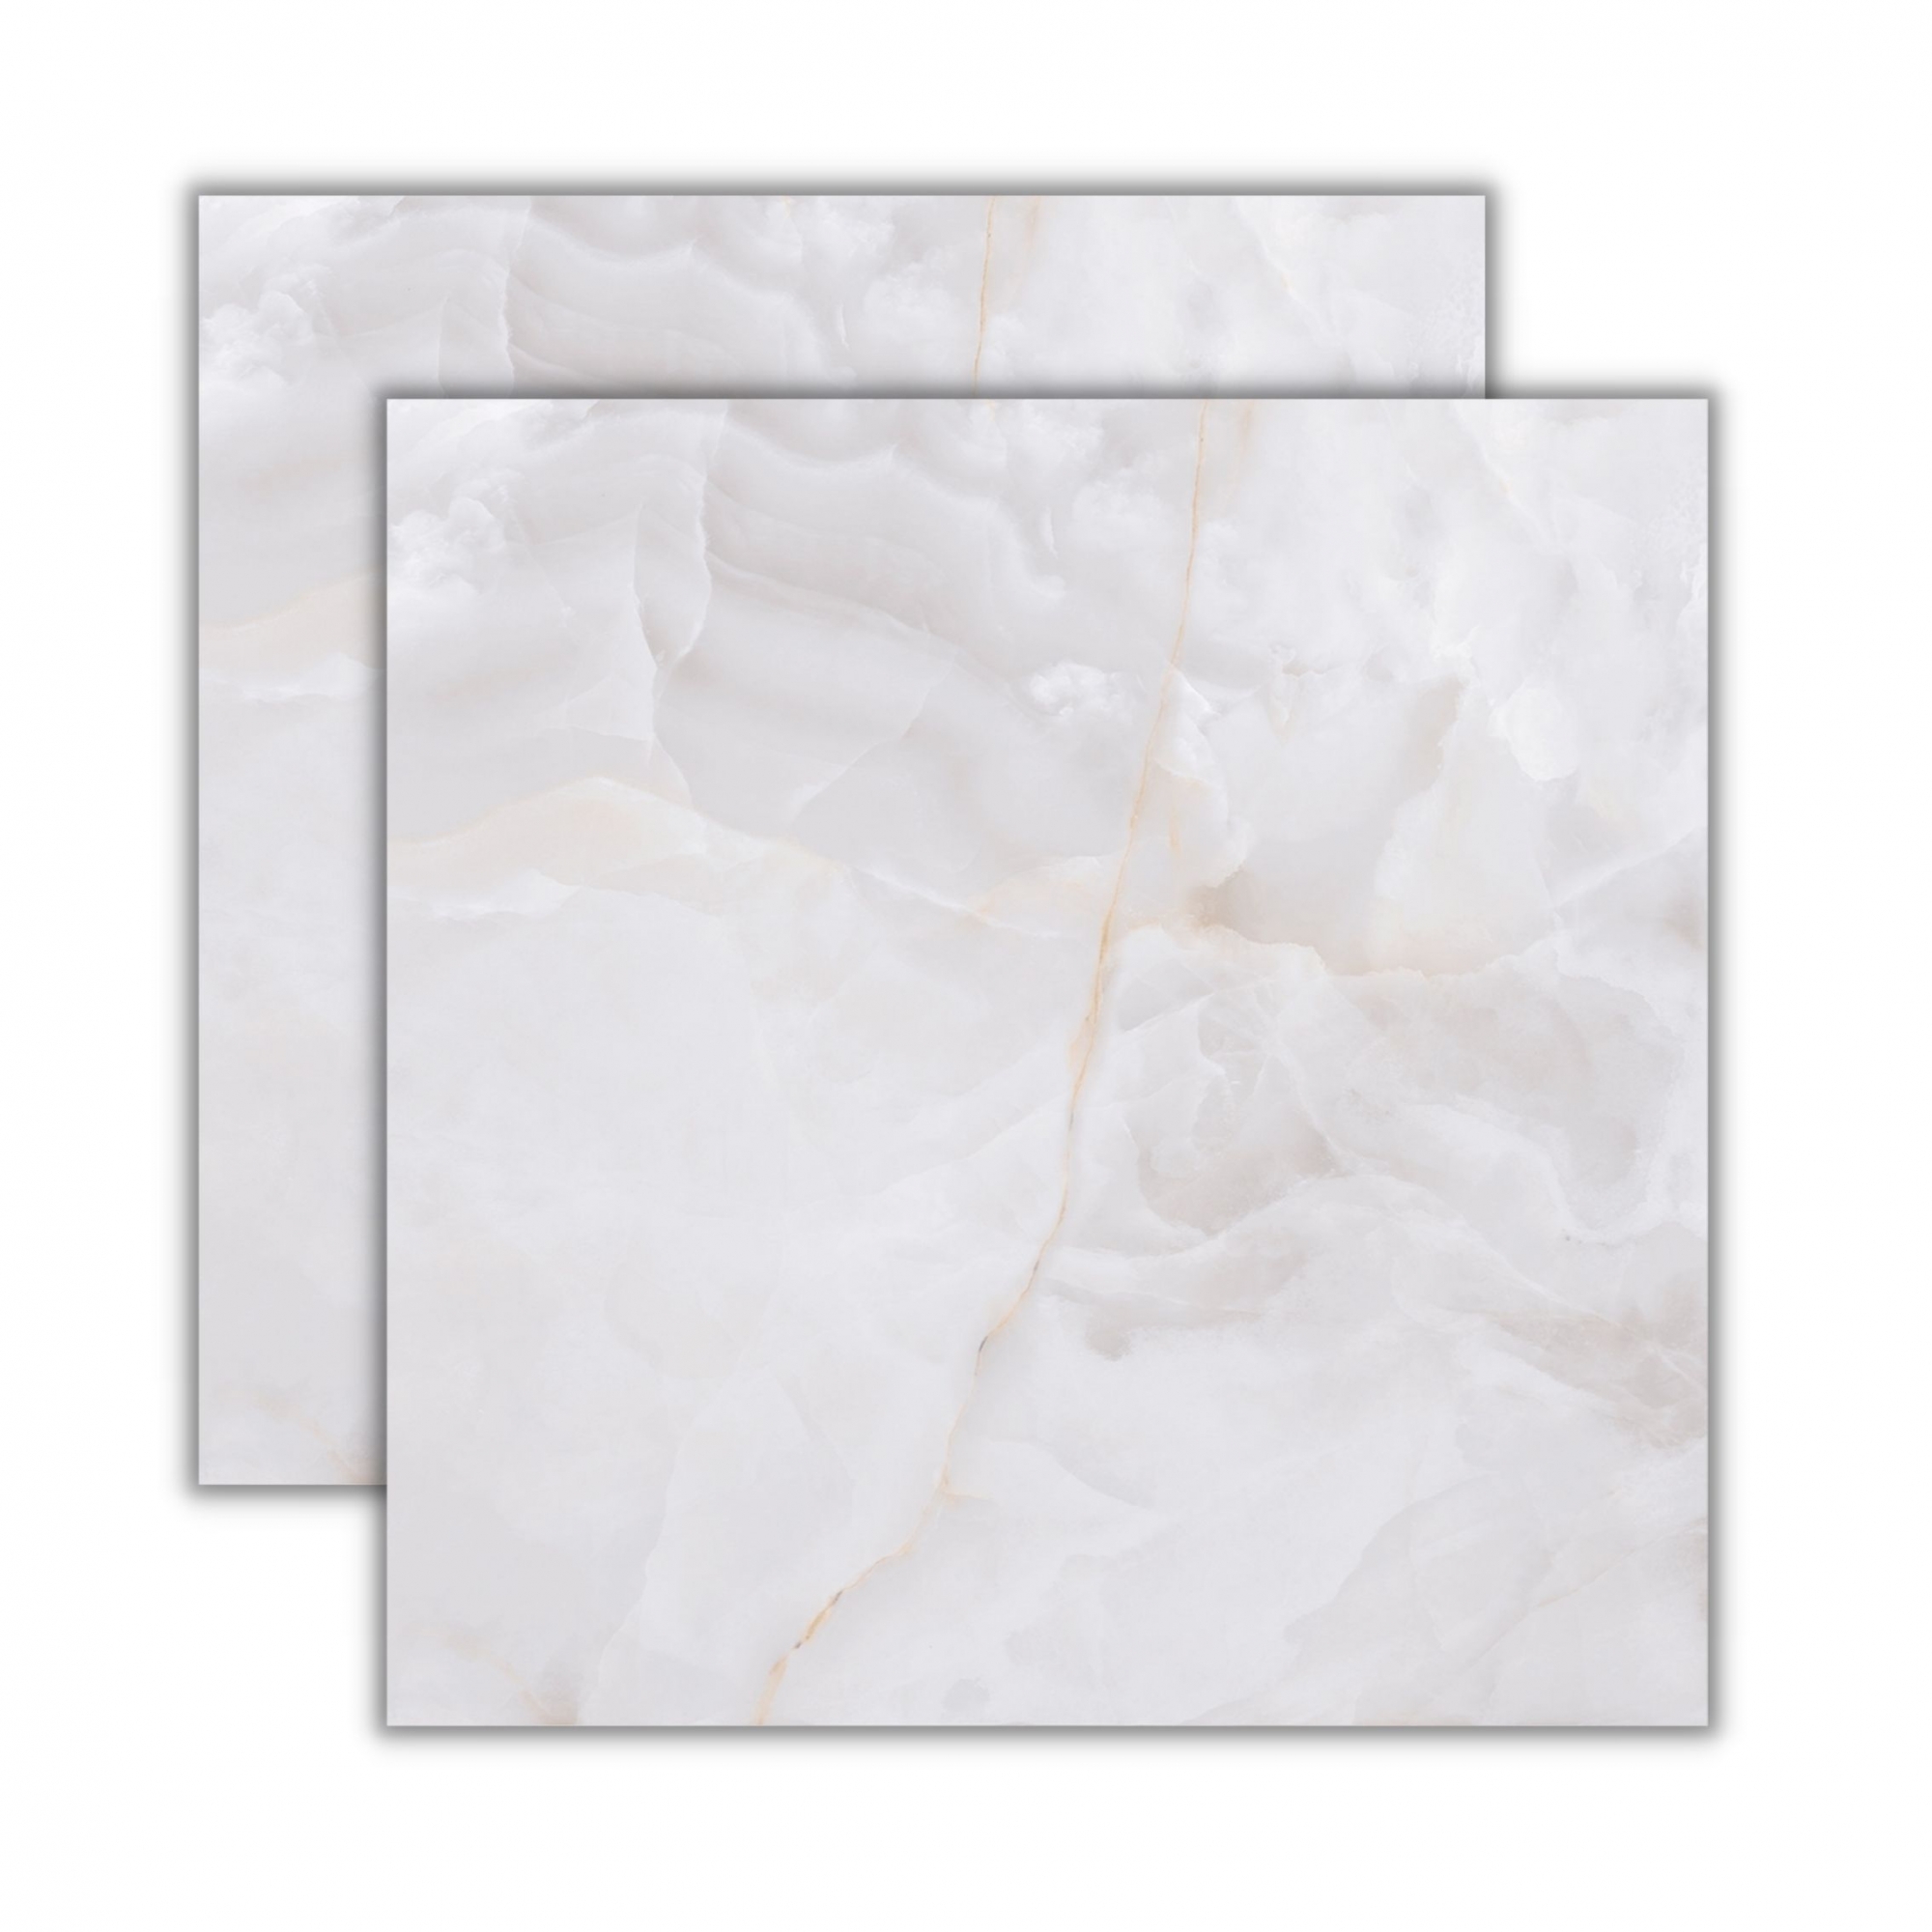 Onix Bianco Lux 90x90cm<br /><b>R$ 126,00 M² </b> <br /> Cx 2,40M²  <b>R$ 302,40 </b>